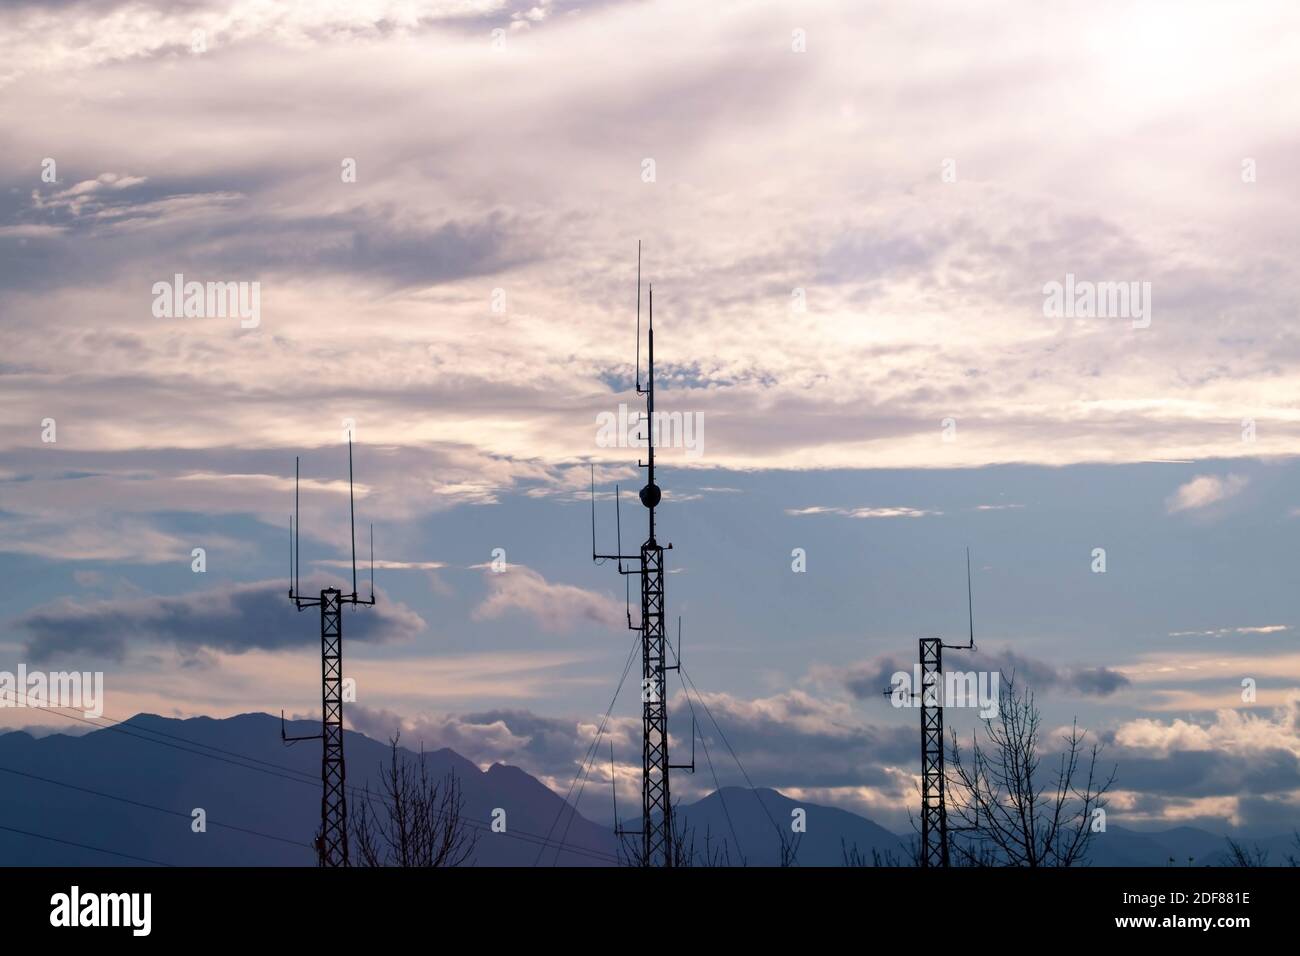 Drei Telekommunikationsmasten oder mobile Türme mit Satellitenantennen Silhouetten bei Sonnenuntergang cludy Himmel Hintergrund. Stockfoto